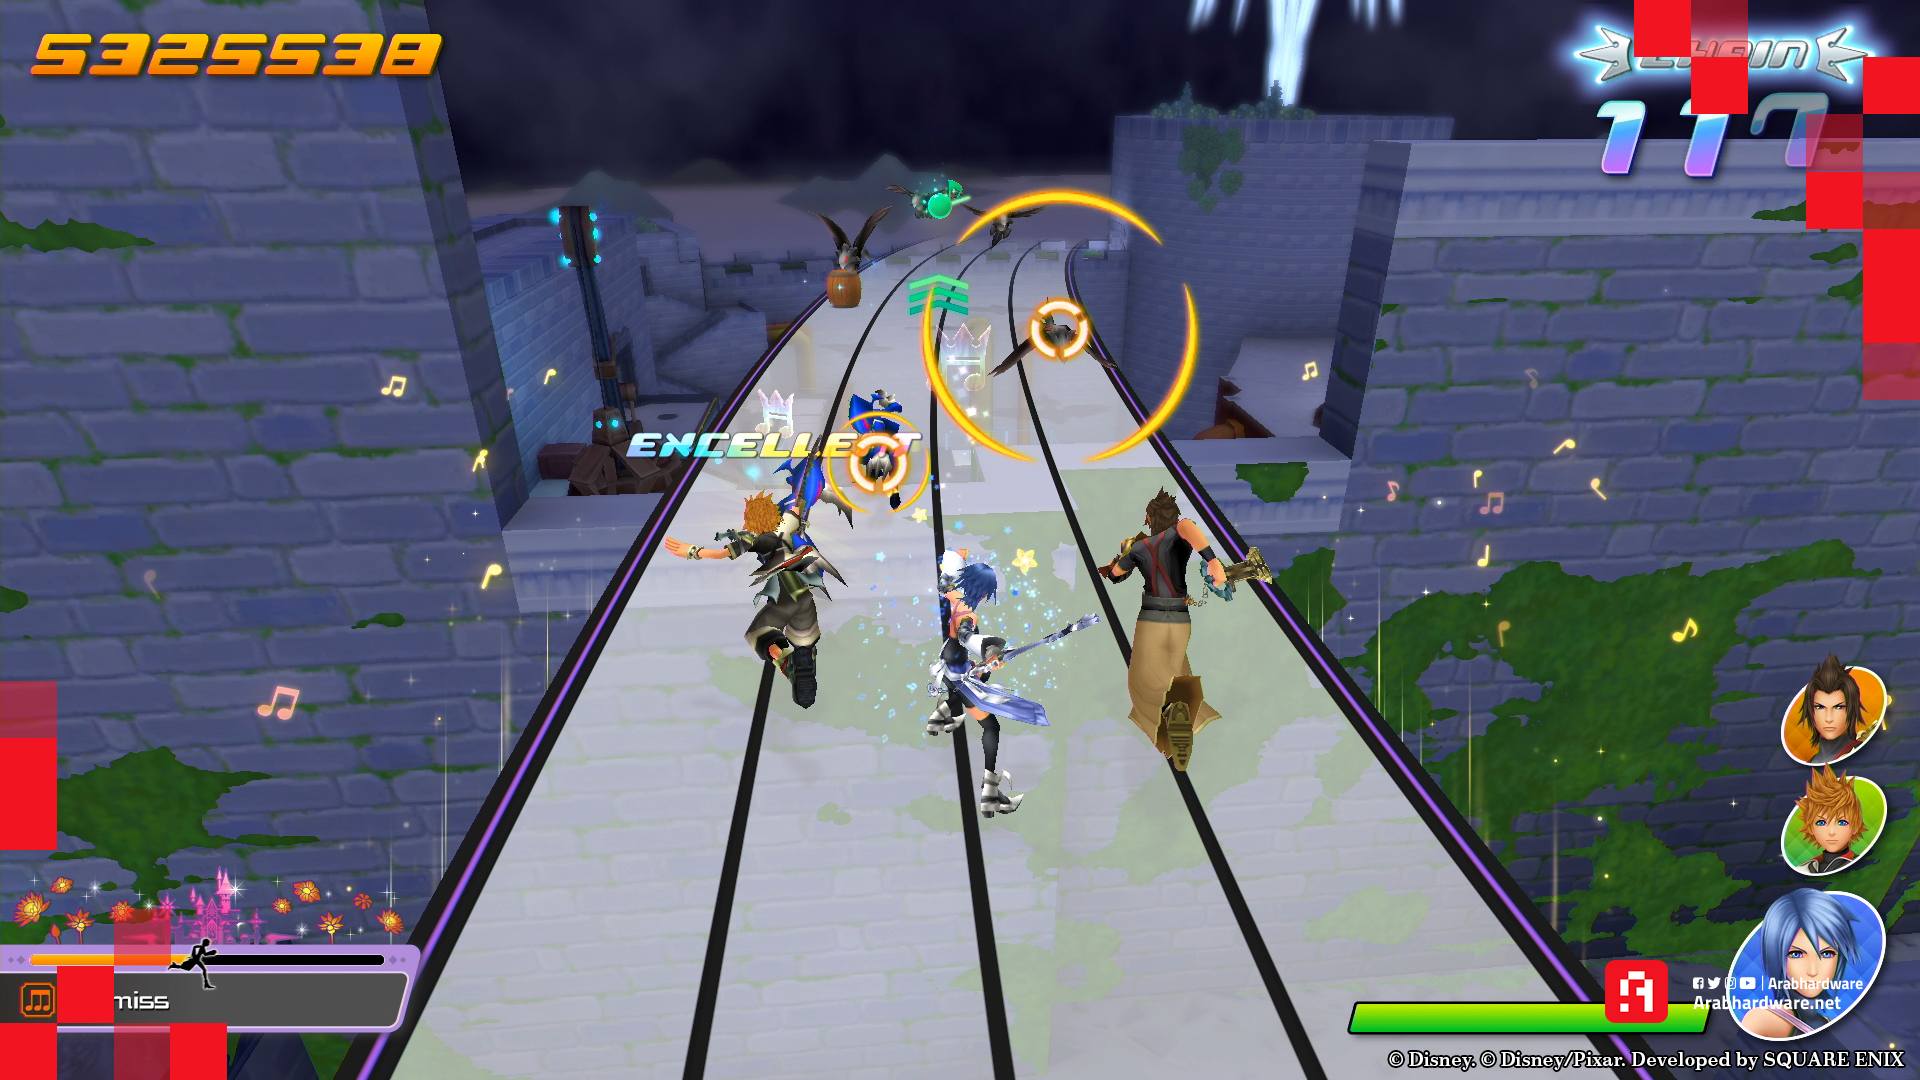 ألقِ معنا نظرة عميقة على لعبة Kingdom Hearts: Melody of Memory